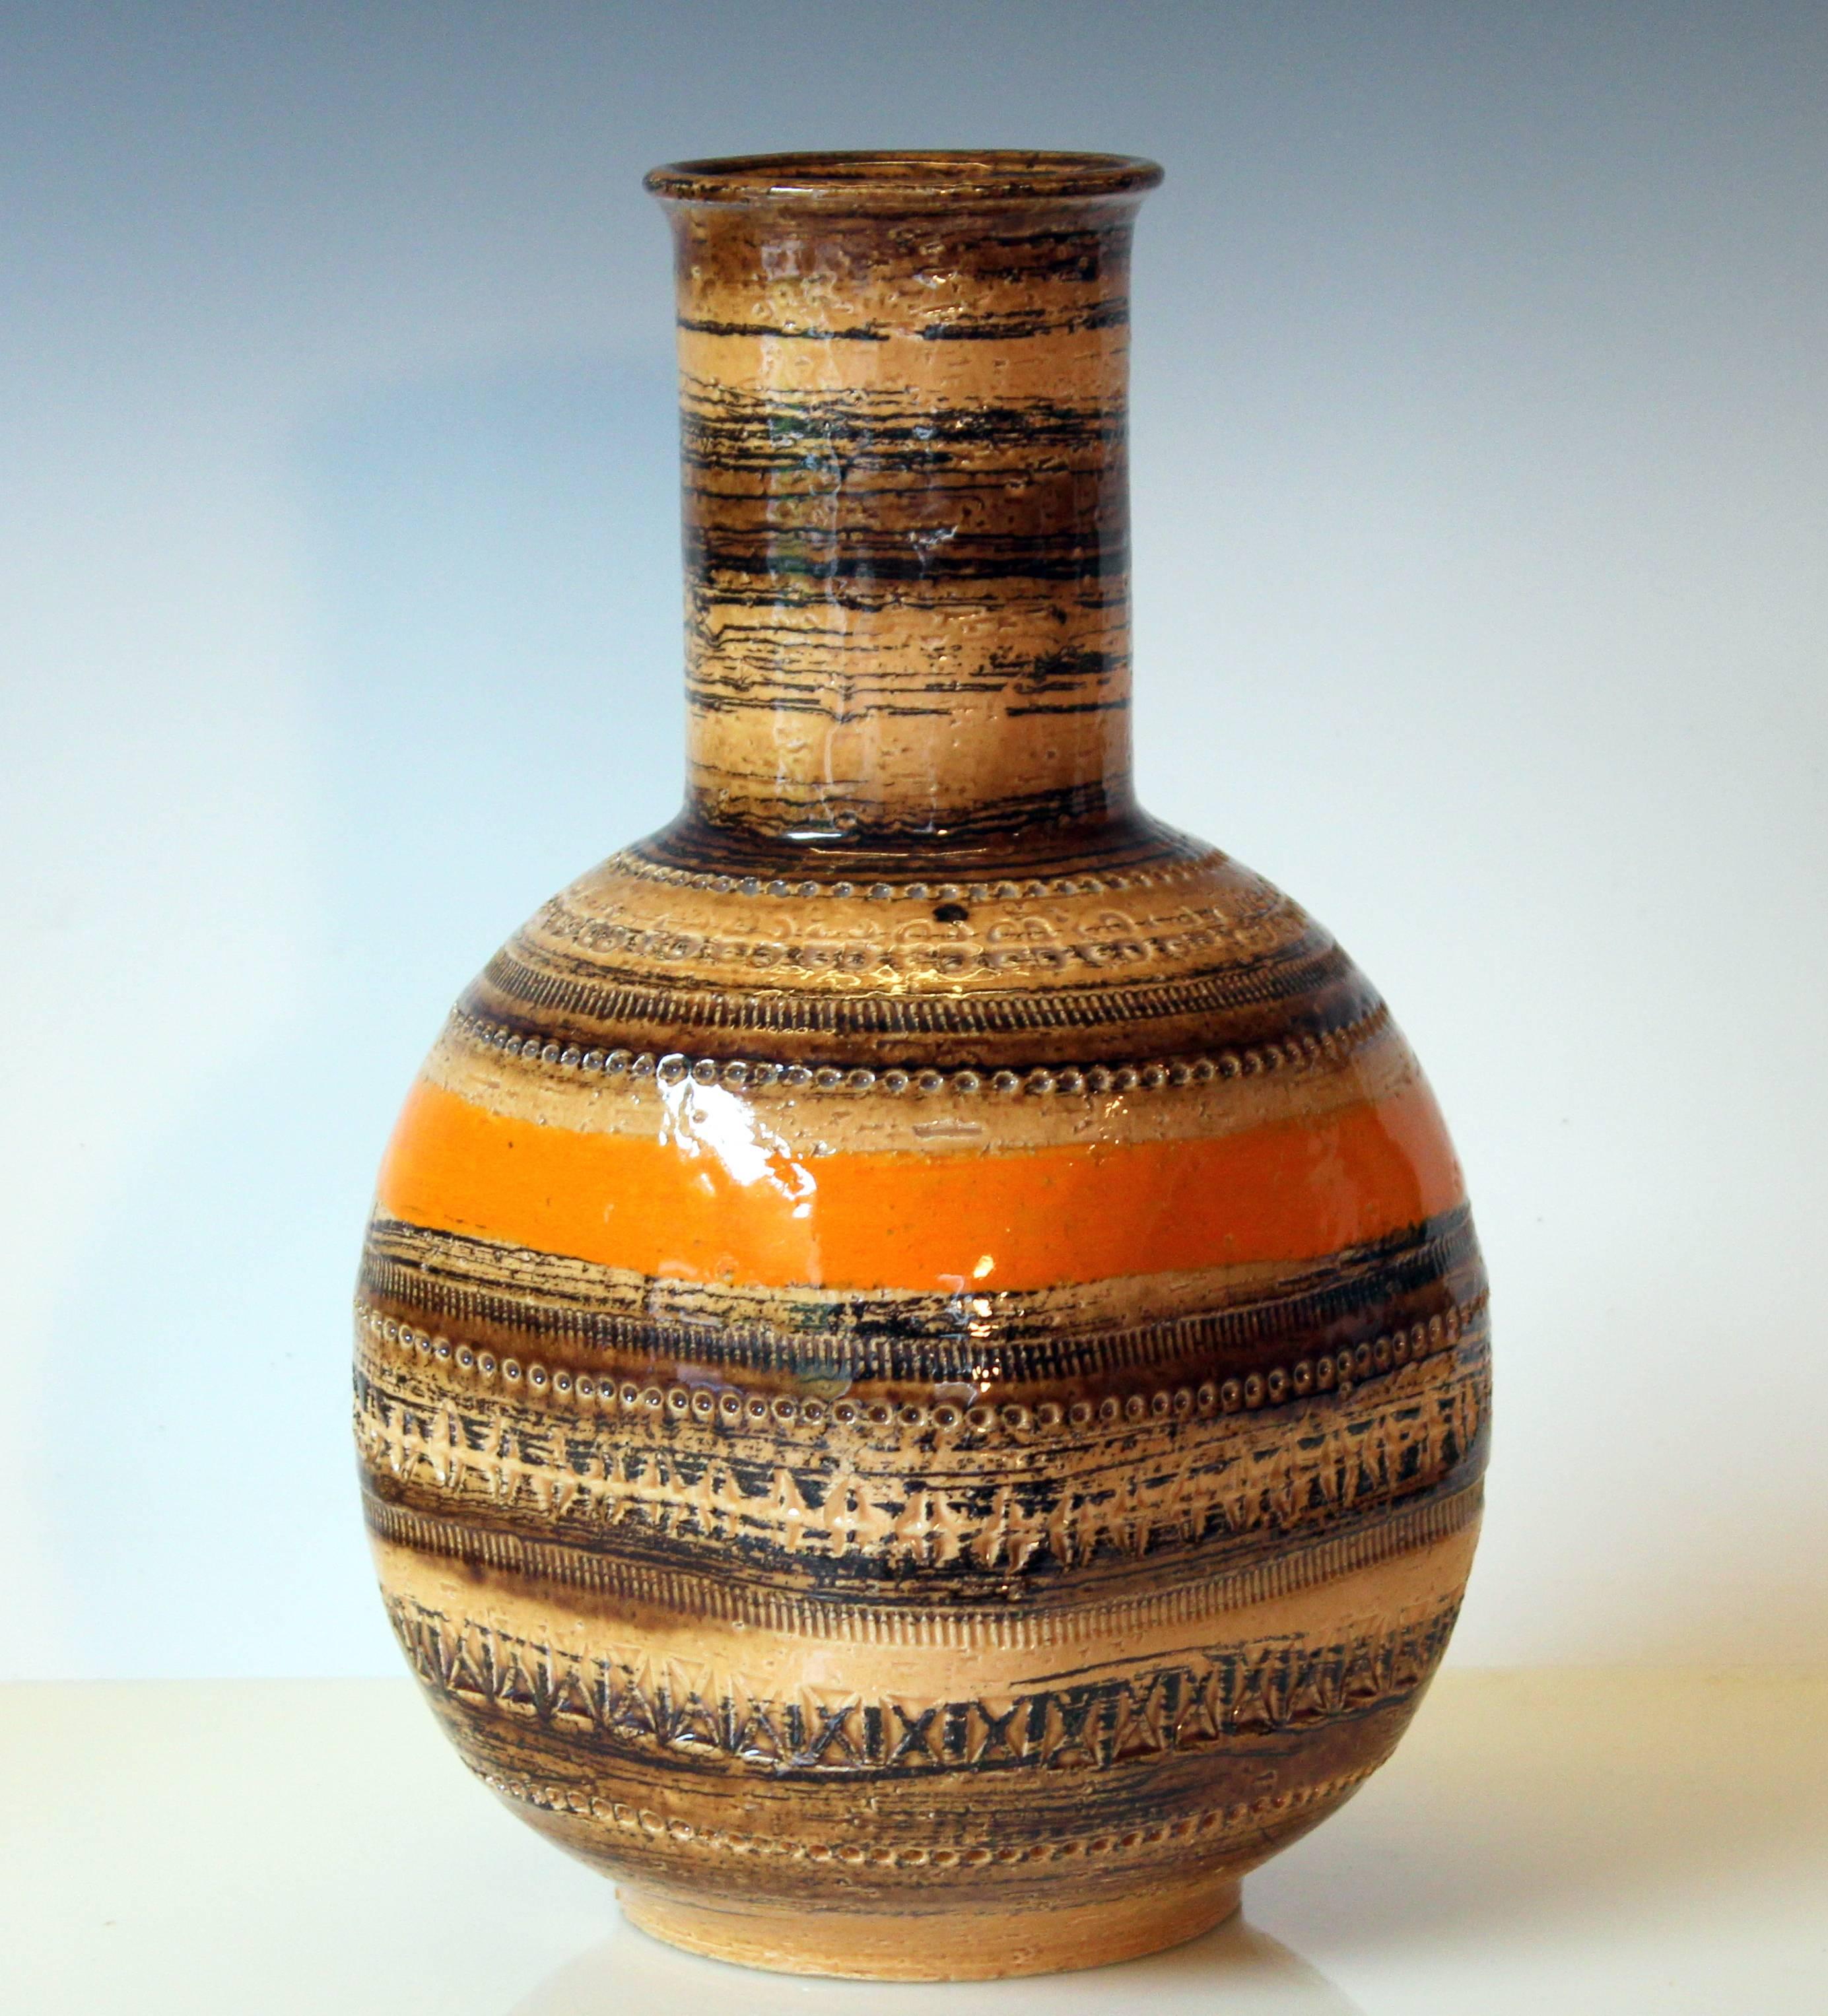 Large Bitossi vase in Sahara glazes with impressed Rimini decoration, circa 1960s. Original Raymor label. Measures: 13" high, 7" square. Excellent condition.